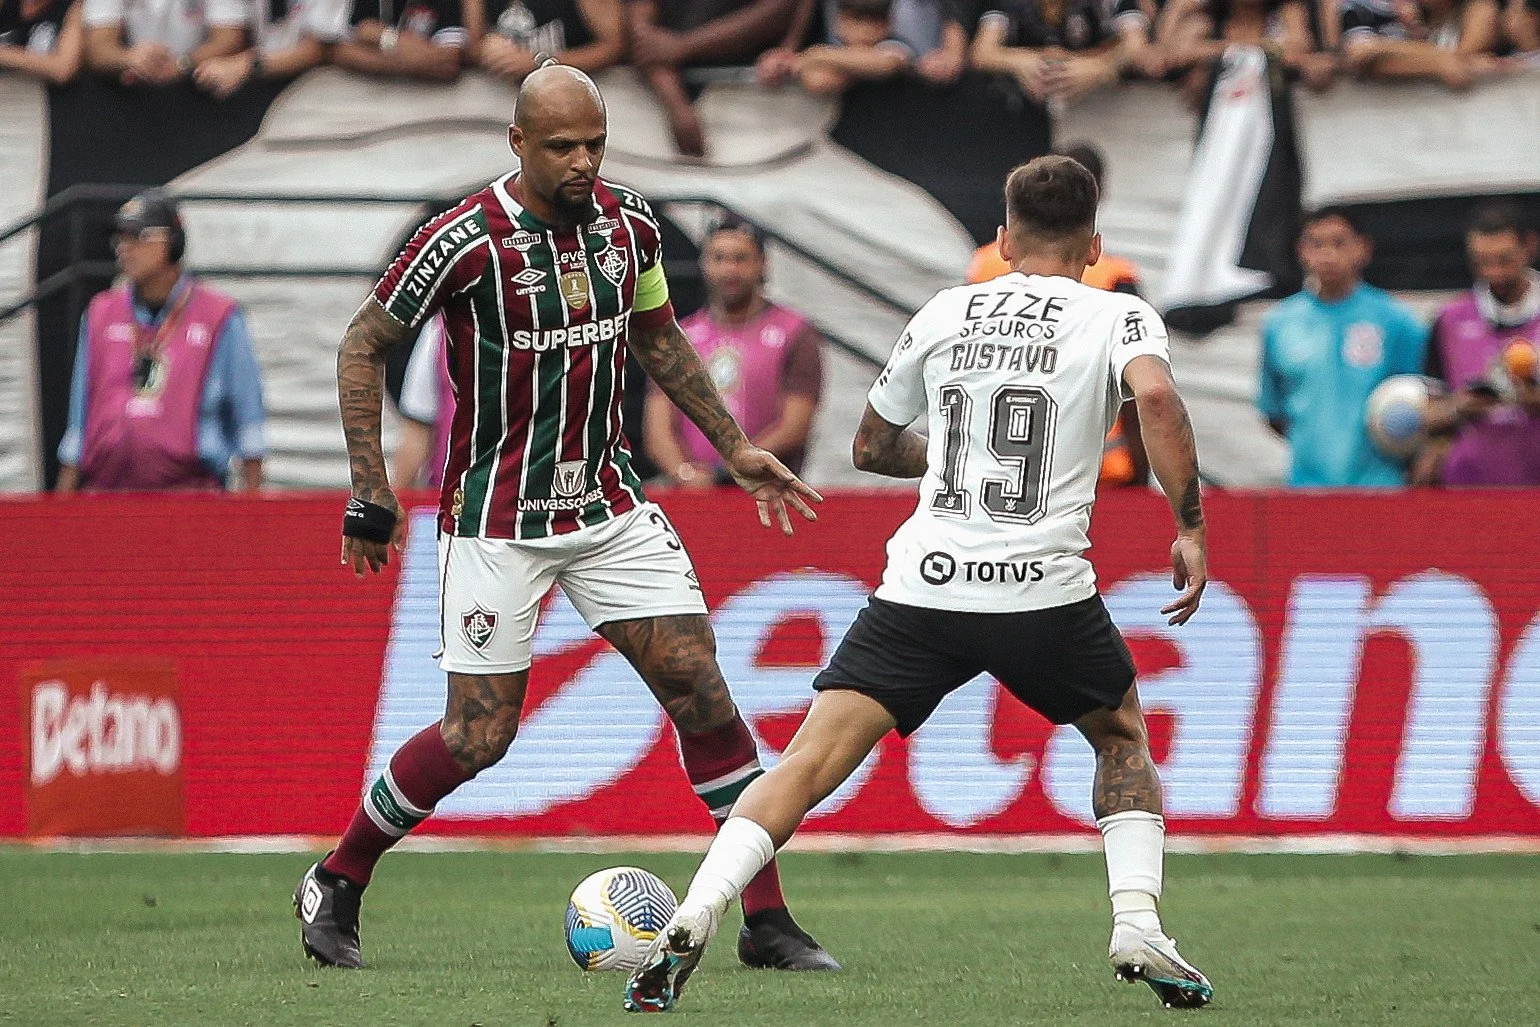 Fotos do Jogo entre Corinthians e Fluminense Pelo Campeonato Brasileiro